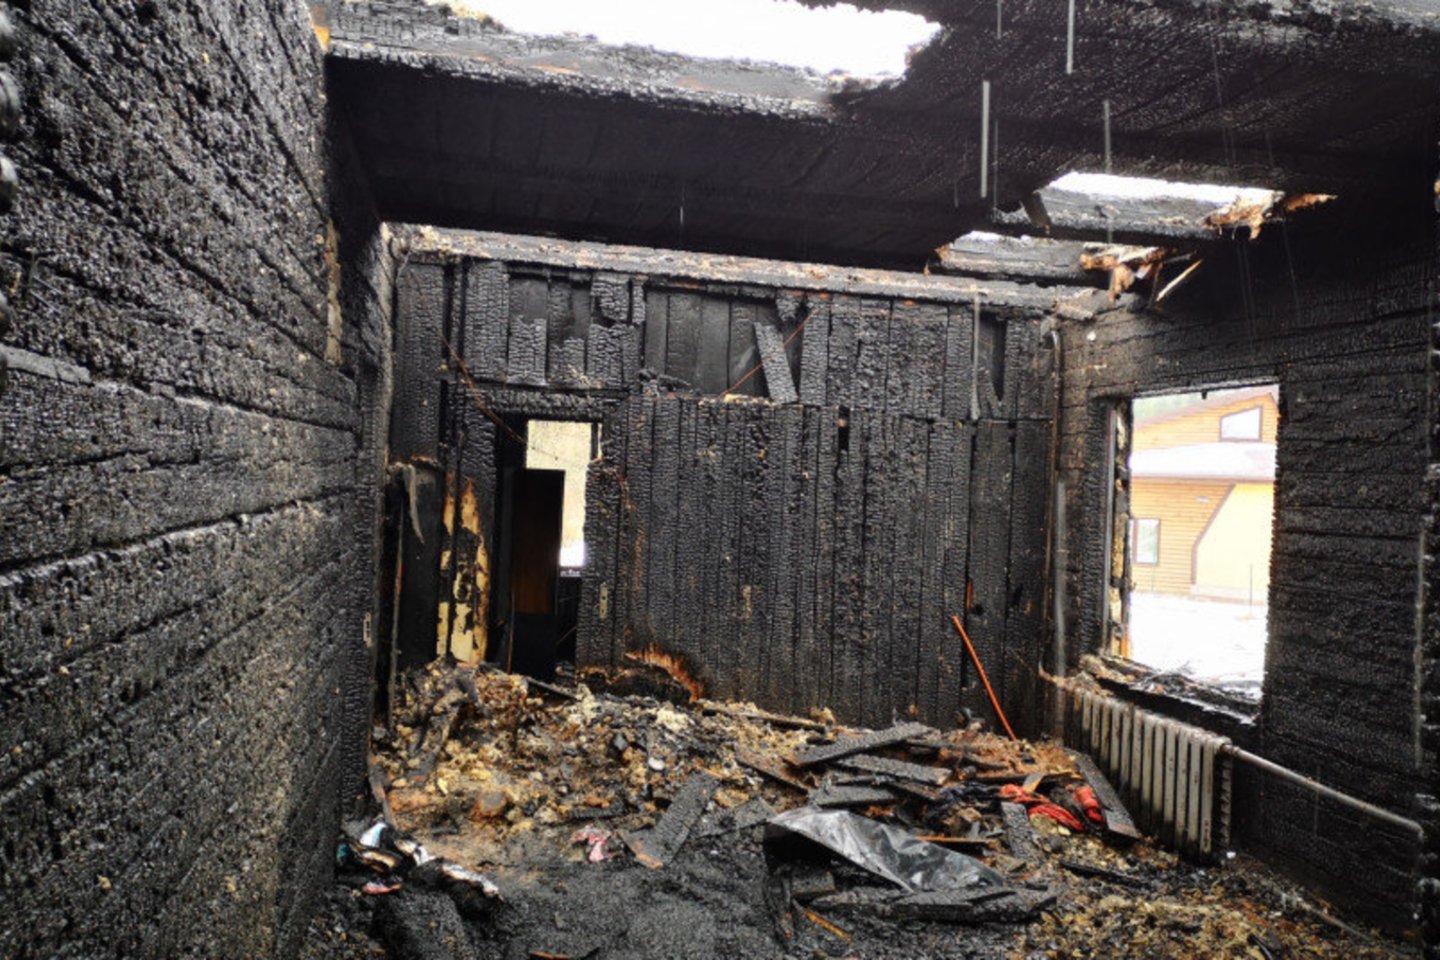  Šiemet nė vieno gaisre žuvusio žmogaus namuose nebuvo įrengtas dūmų detektorius.<br> PAGD nuotr.